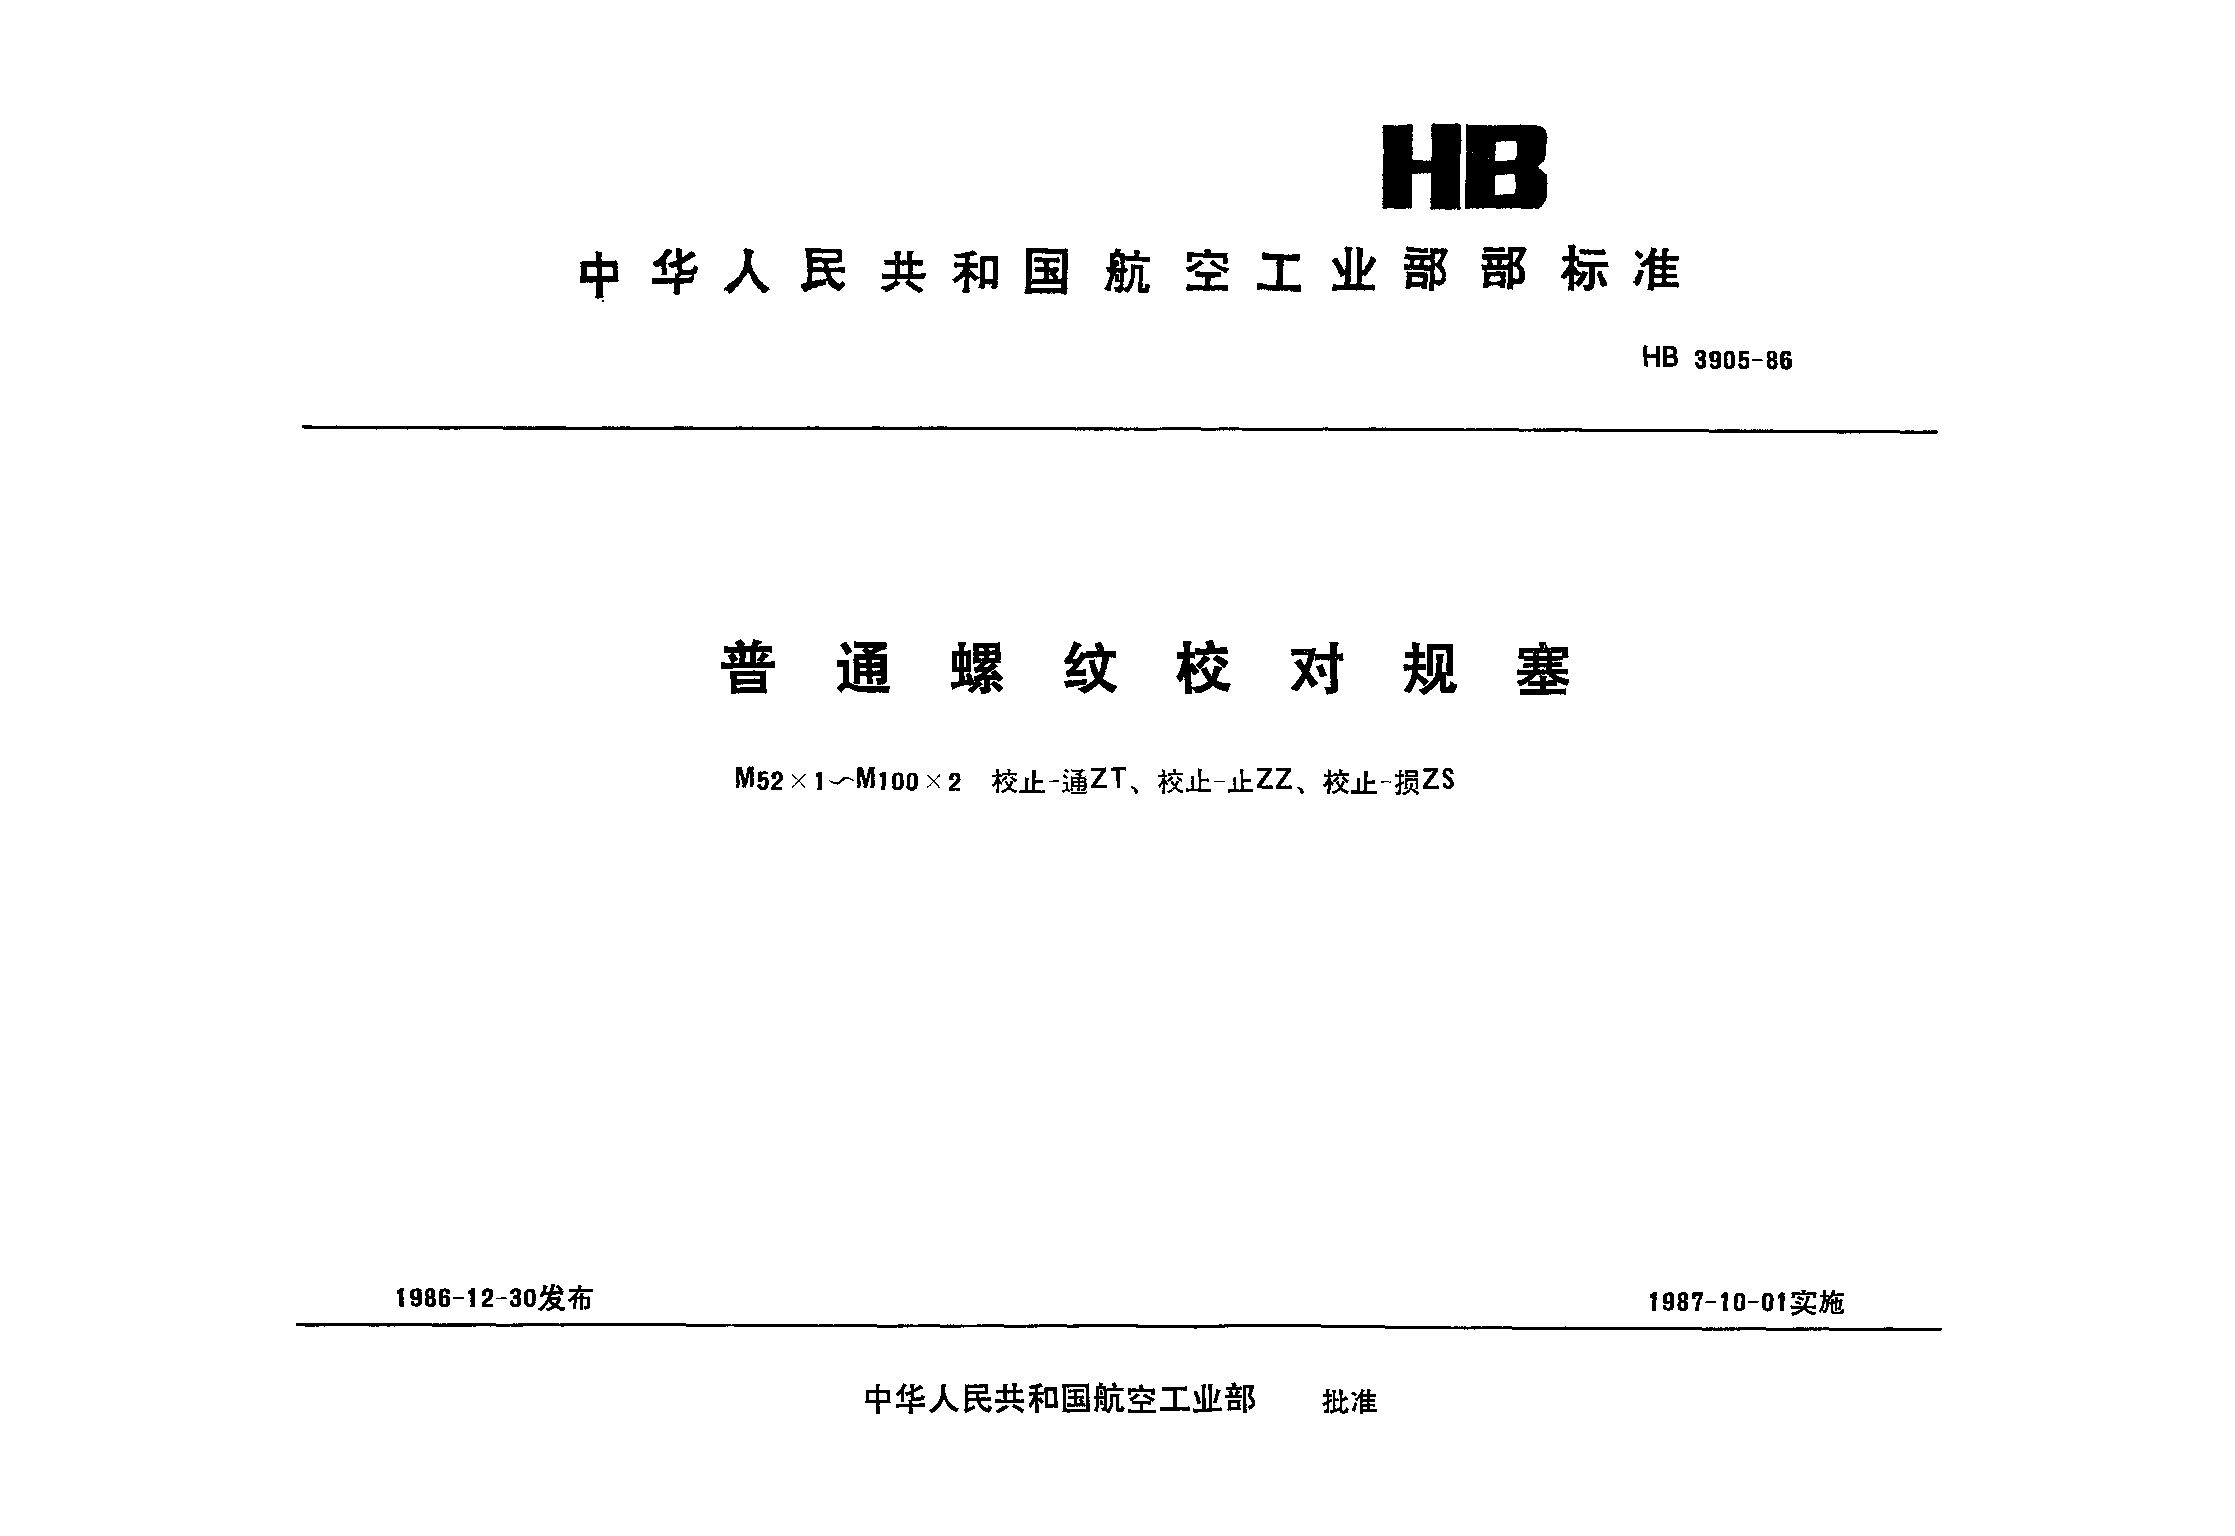 HB 3905-1986